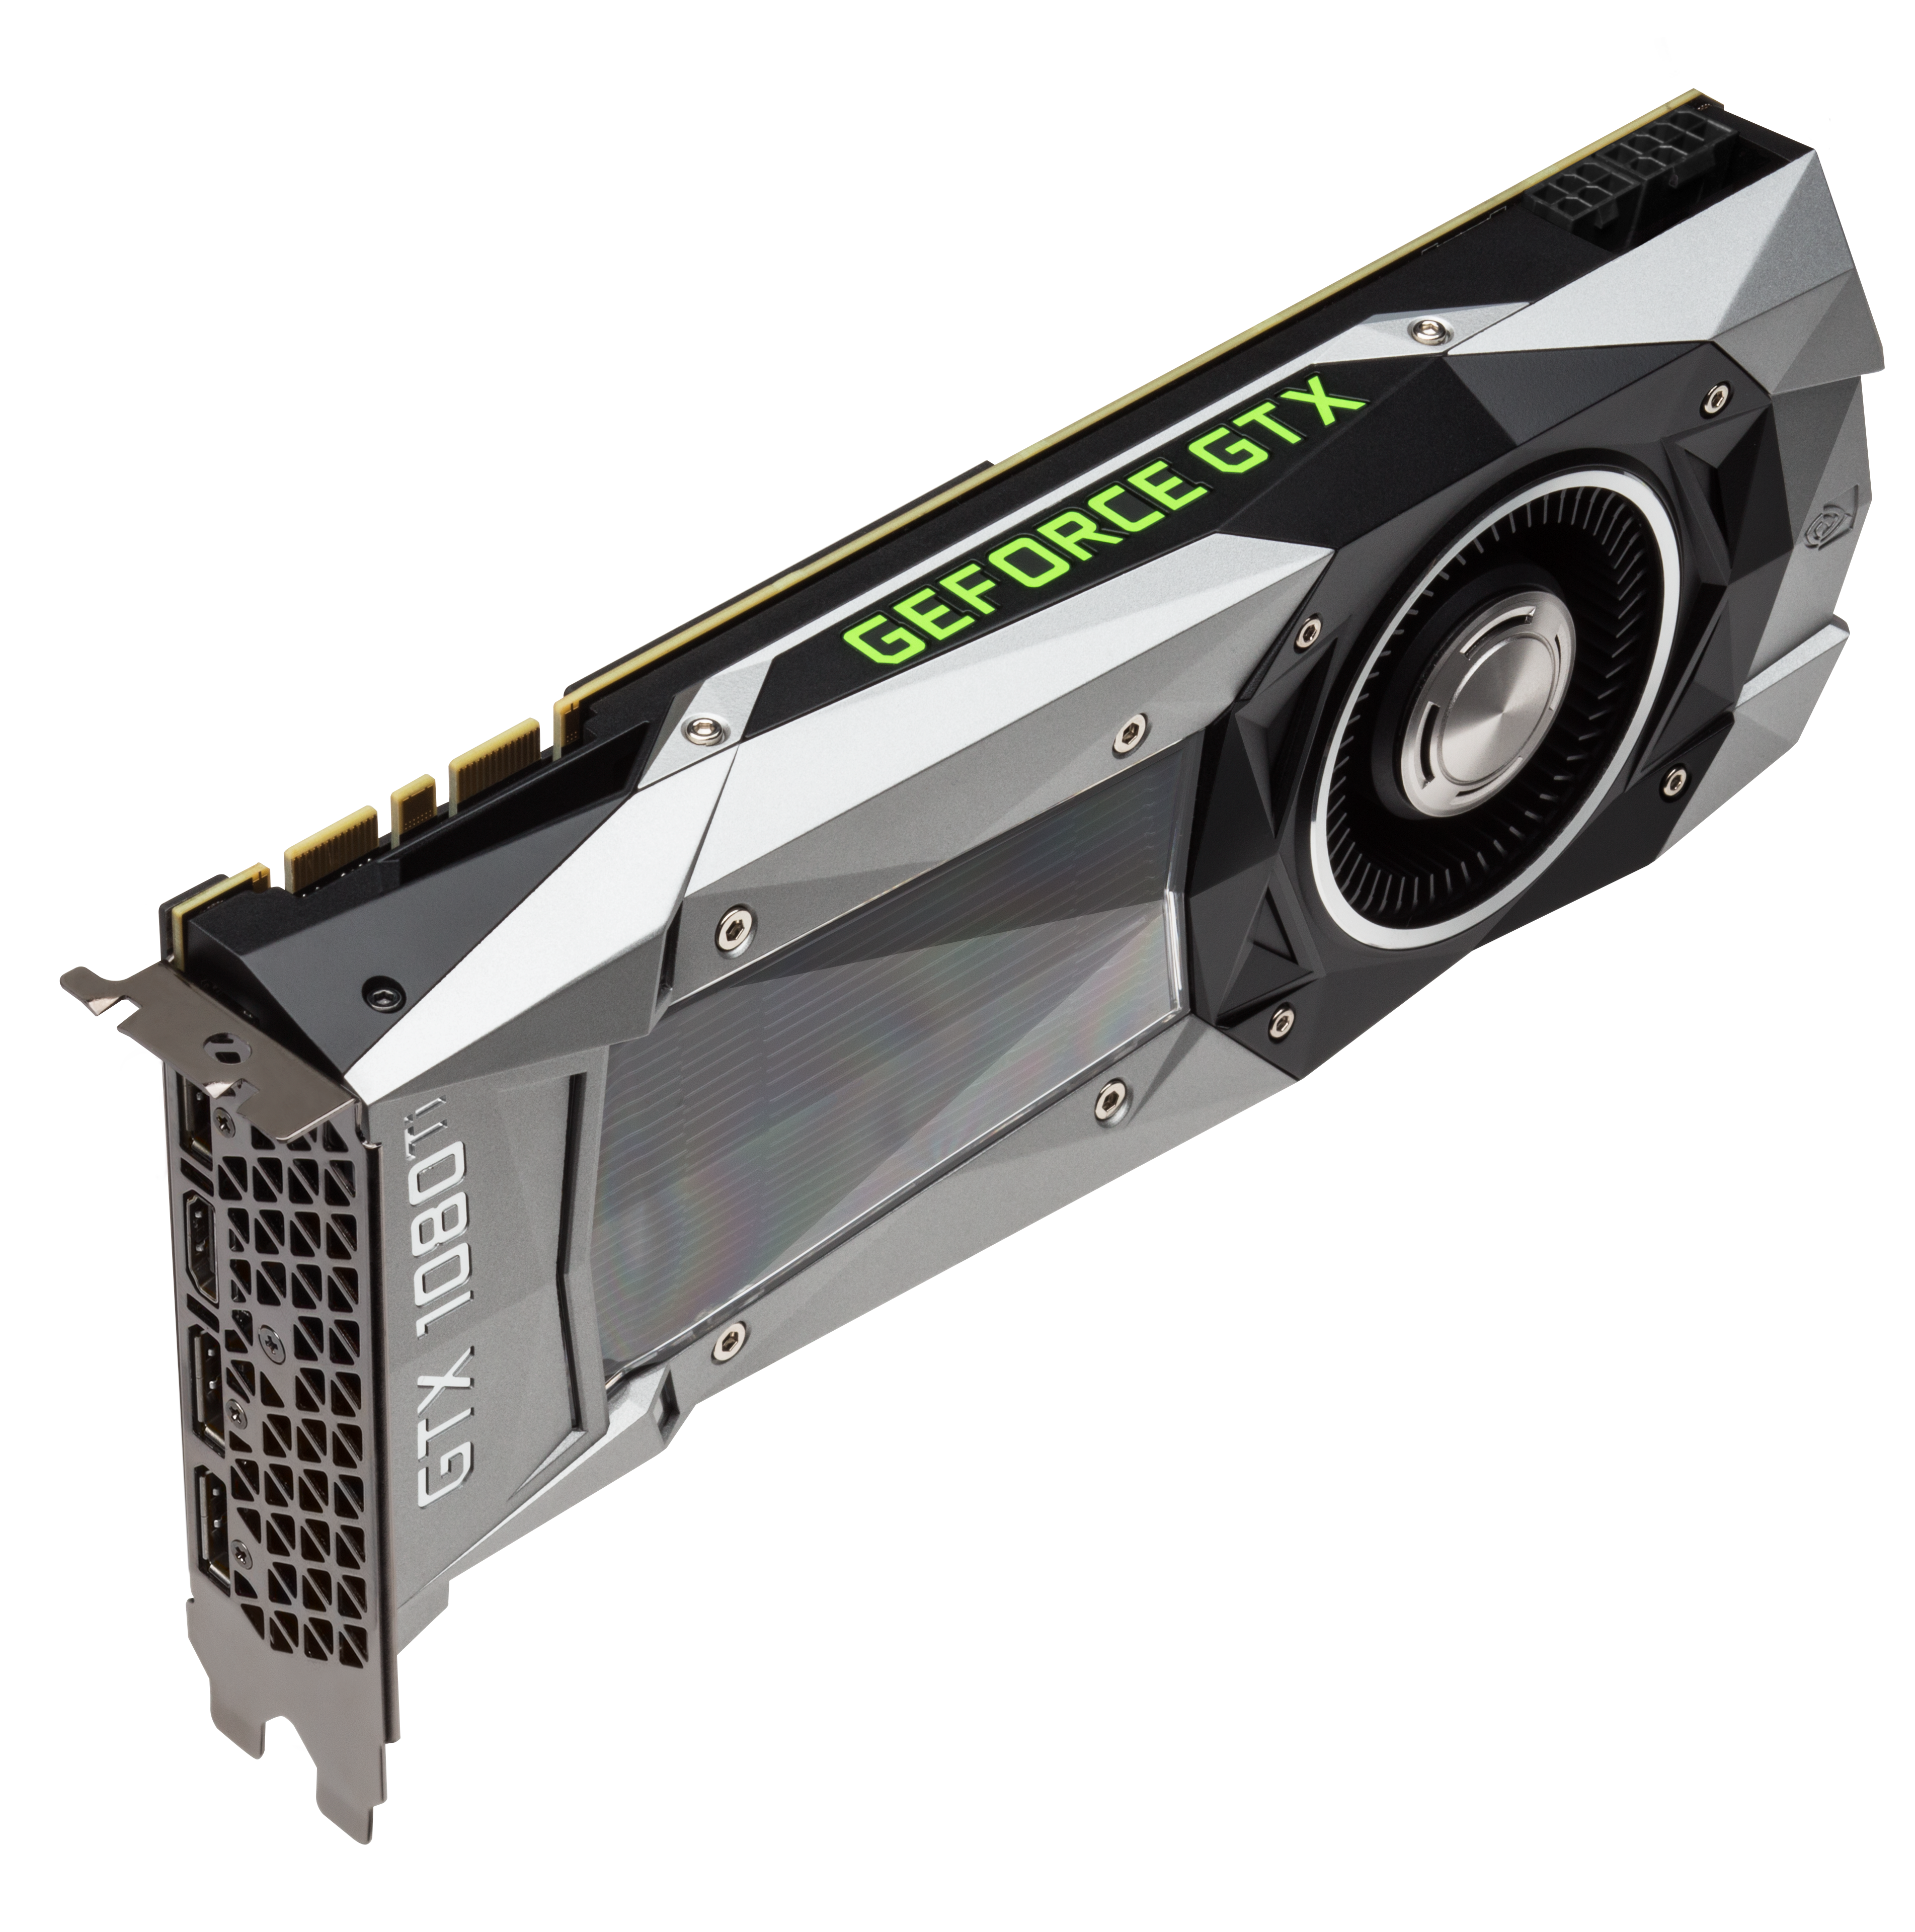 Introducing The GeForce GTX 1080 Ti 